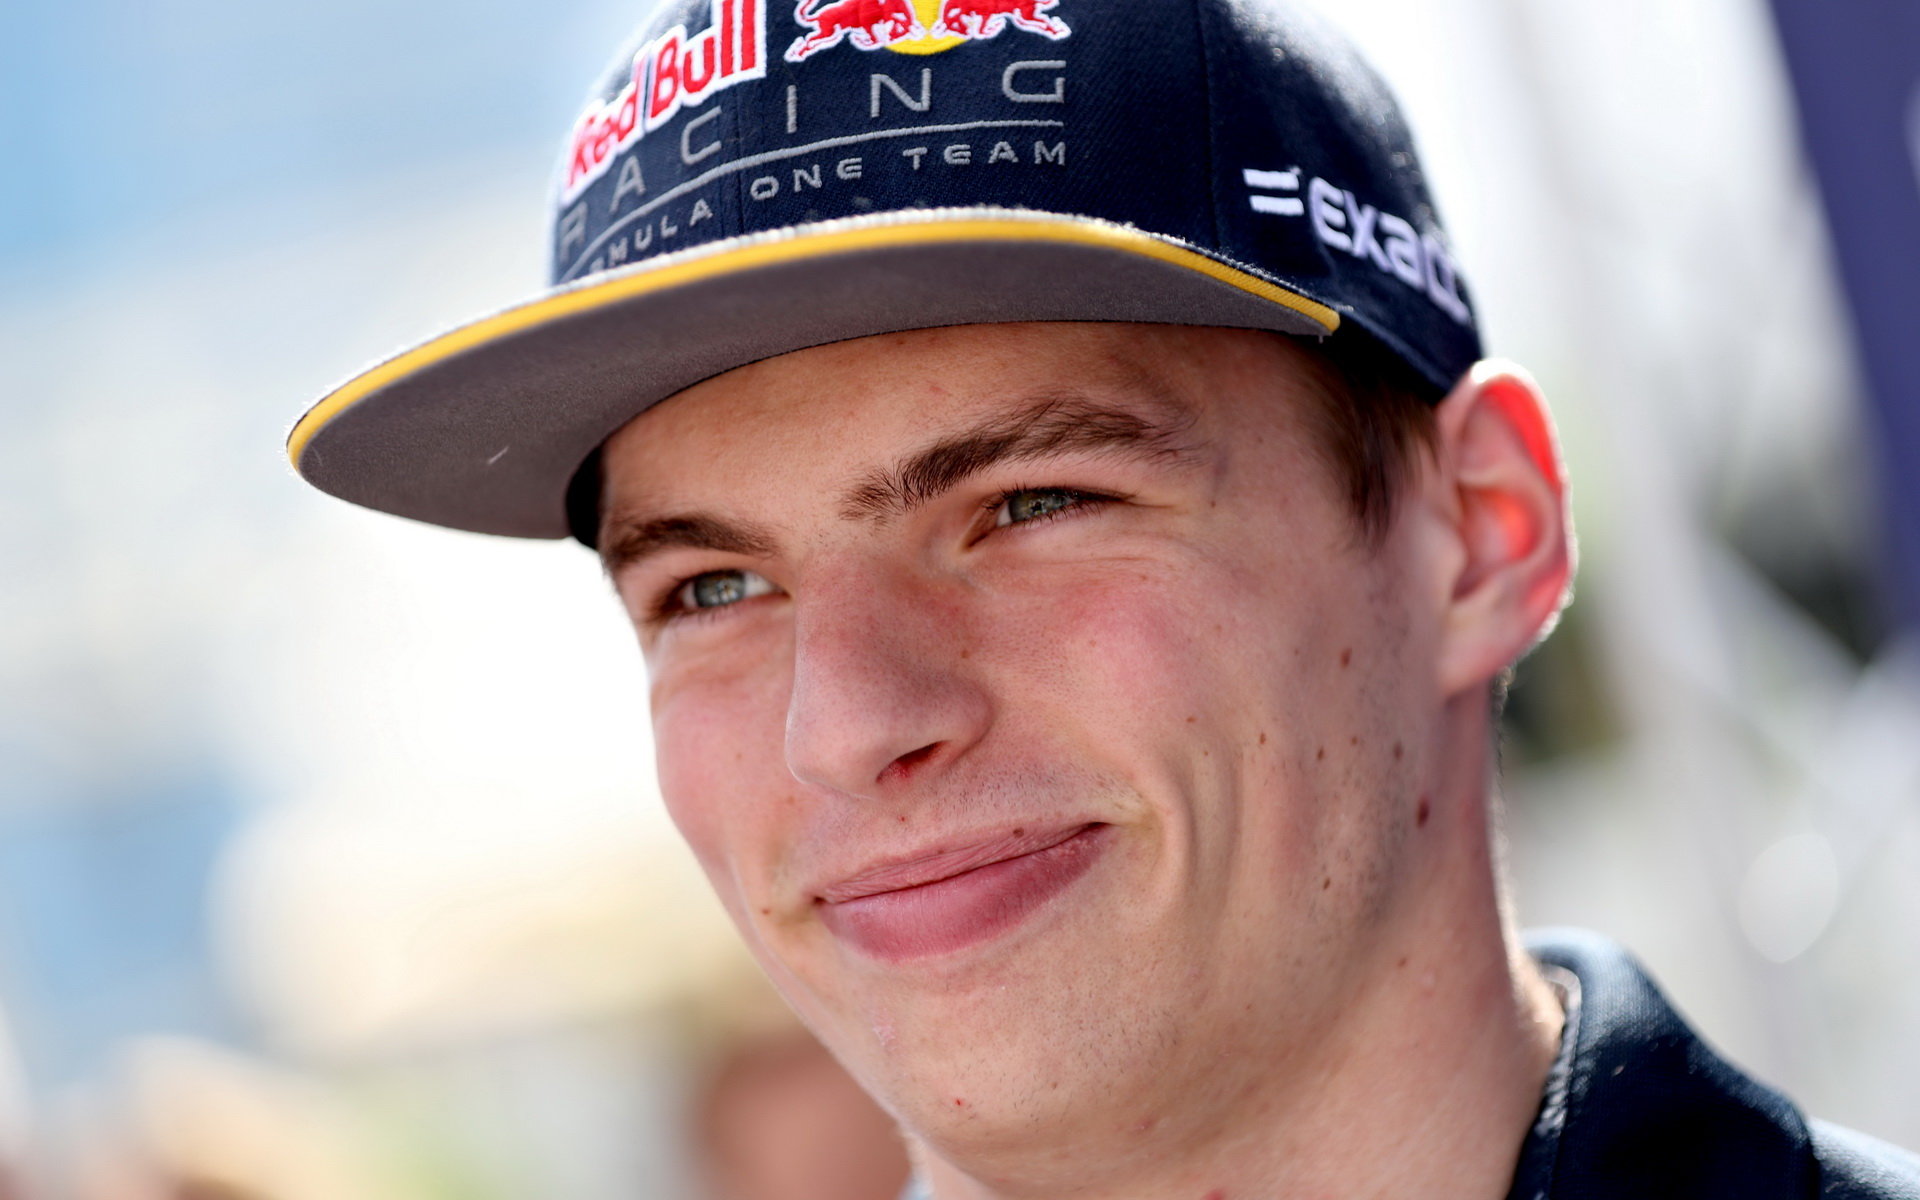 Max Verstappen kritizuje nový prvek na Red Bull Ringu